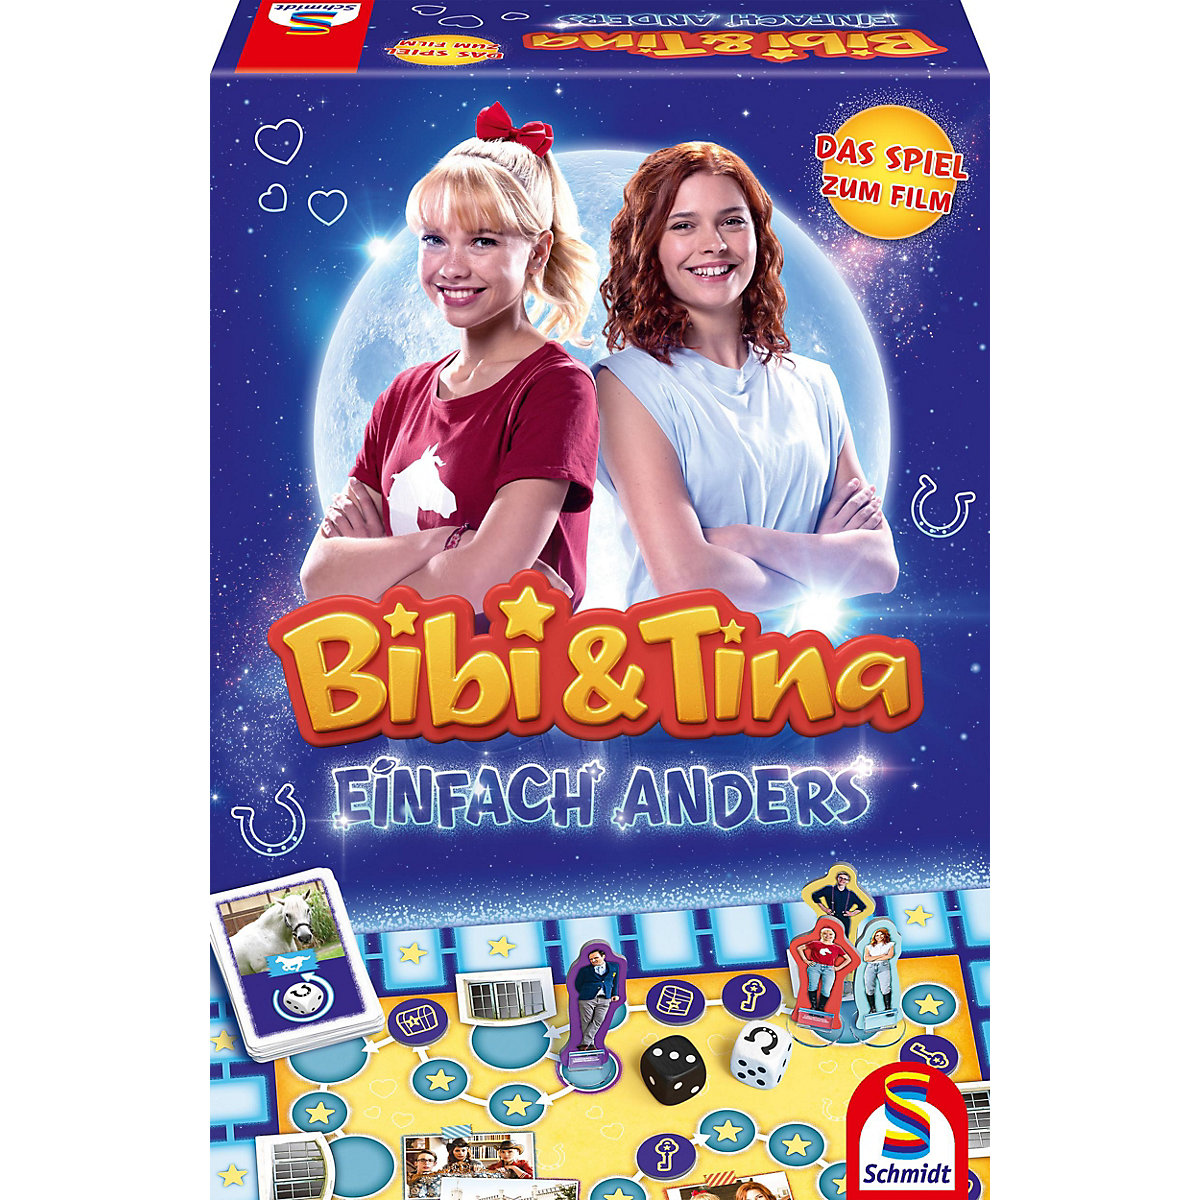 Bibi und Tina Einfach anders (Das Spiel zum Film)